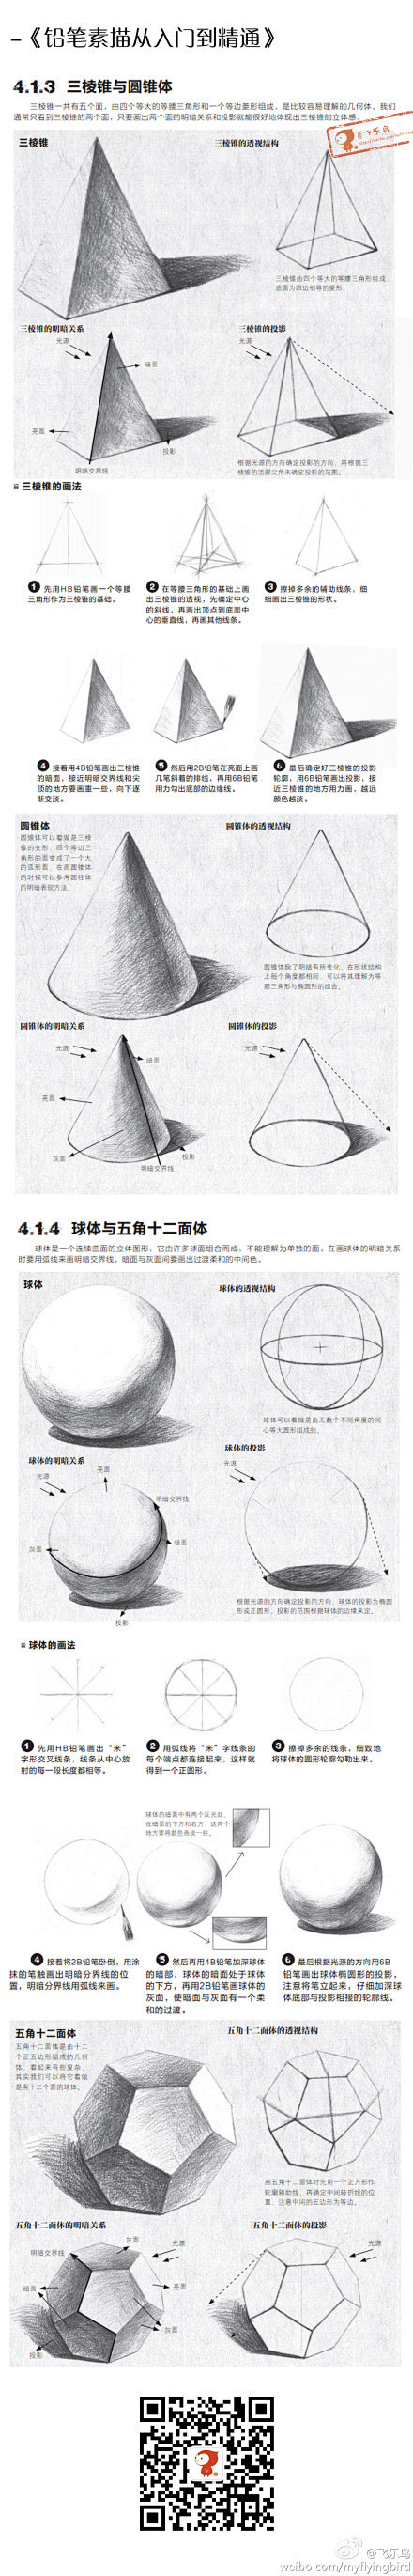 【素描】三棱锥和圆锥体。